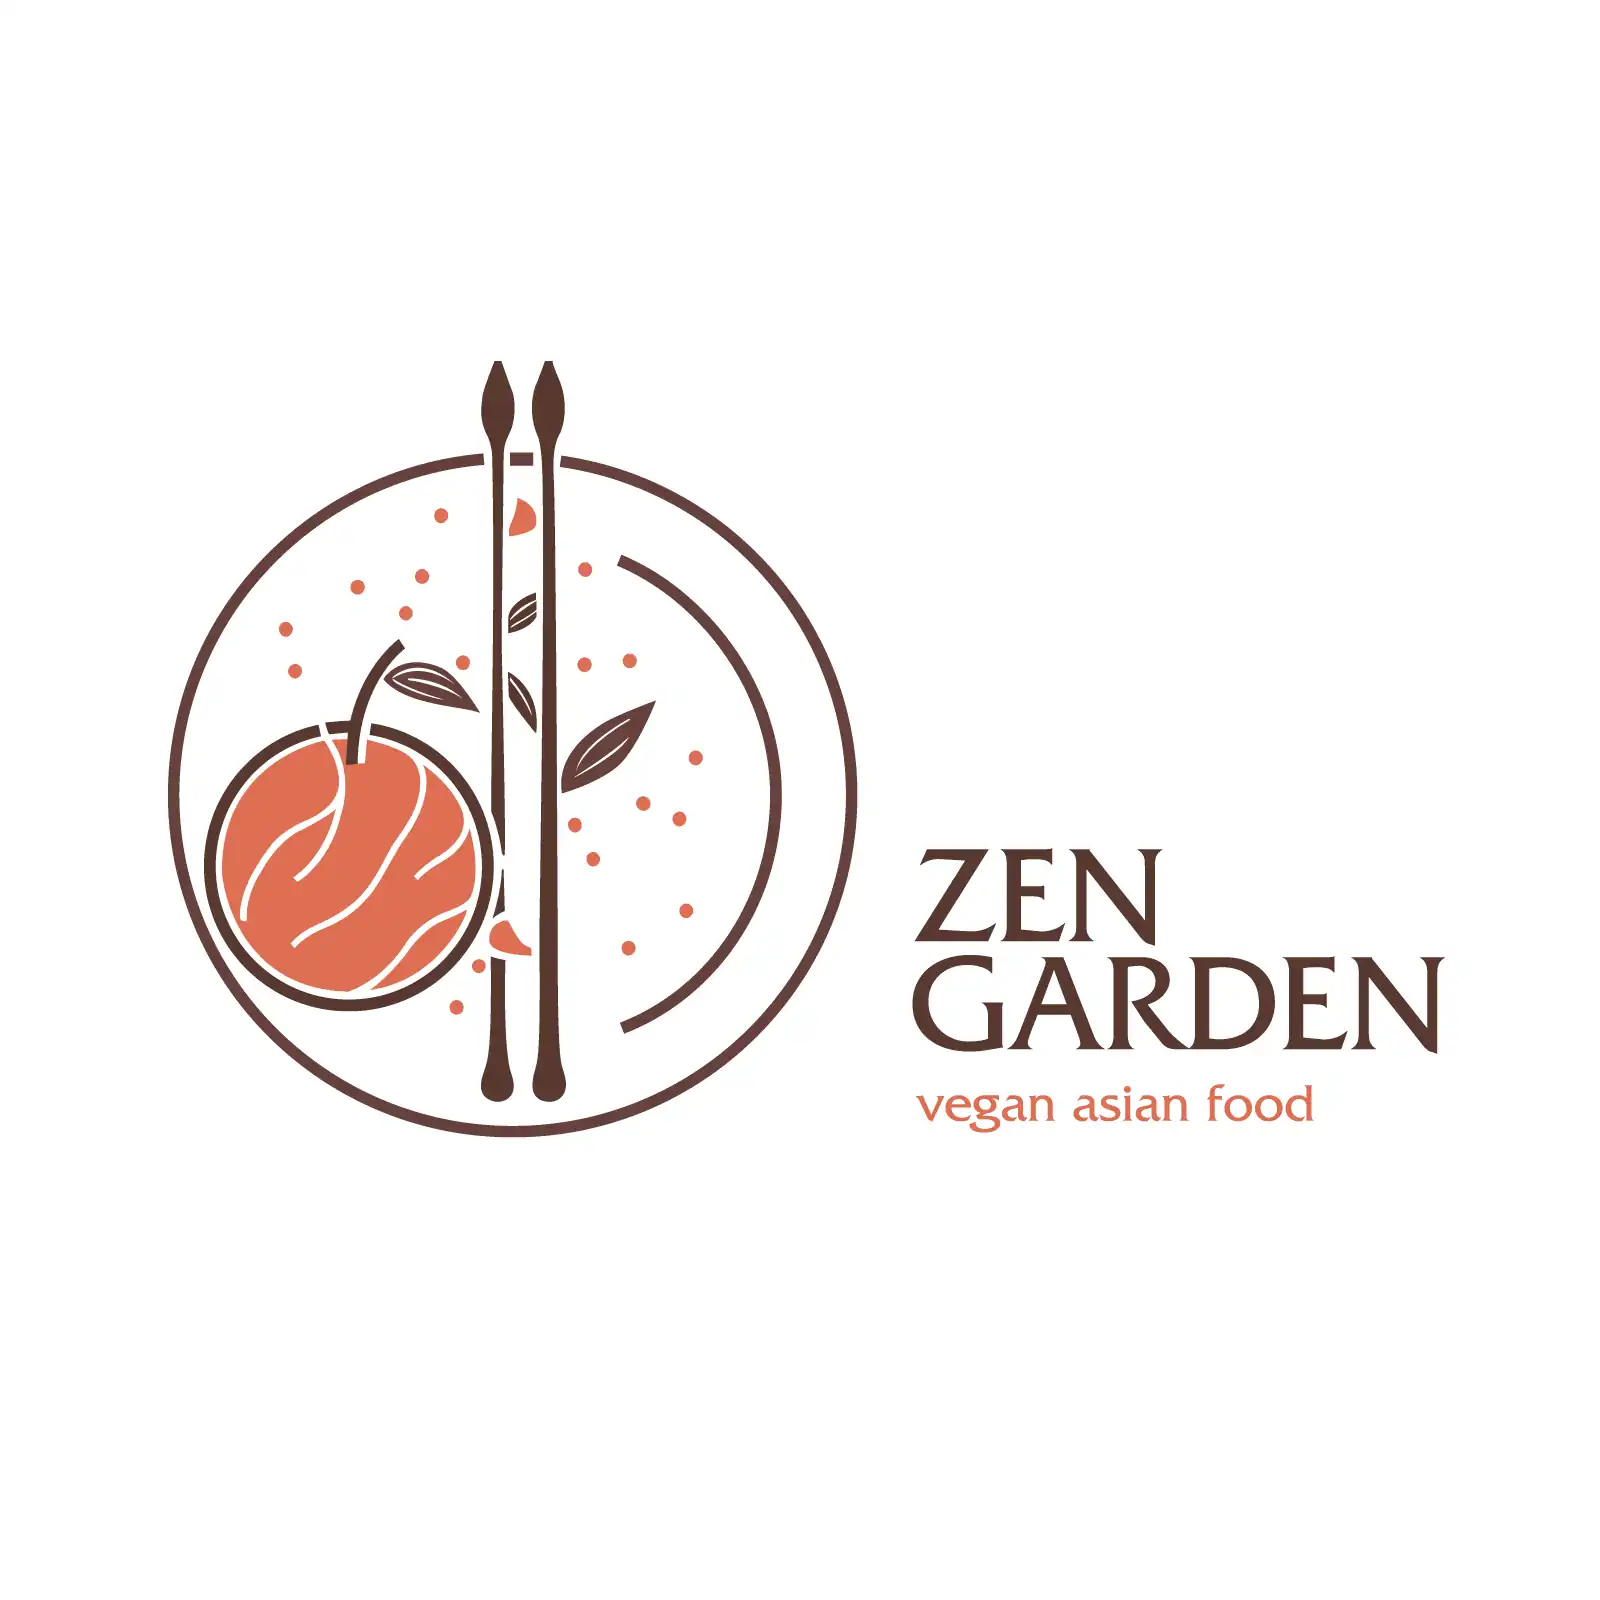 Zen garden, vegan asian food logo